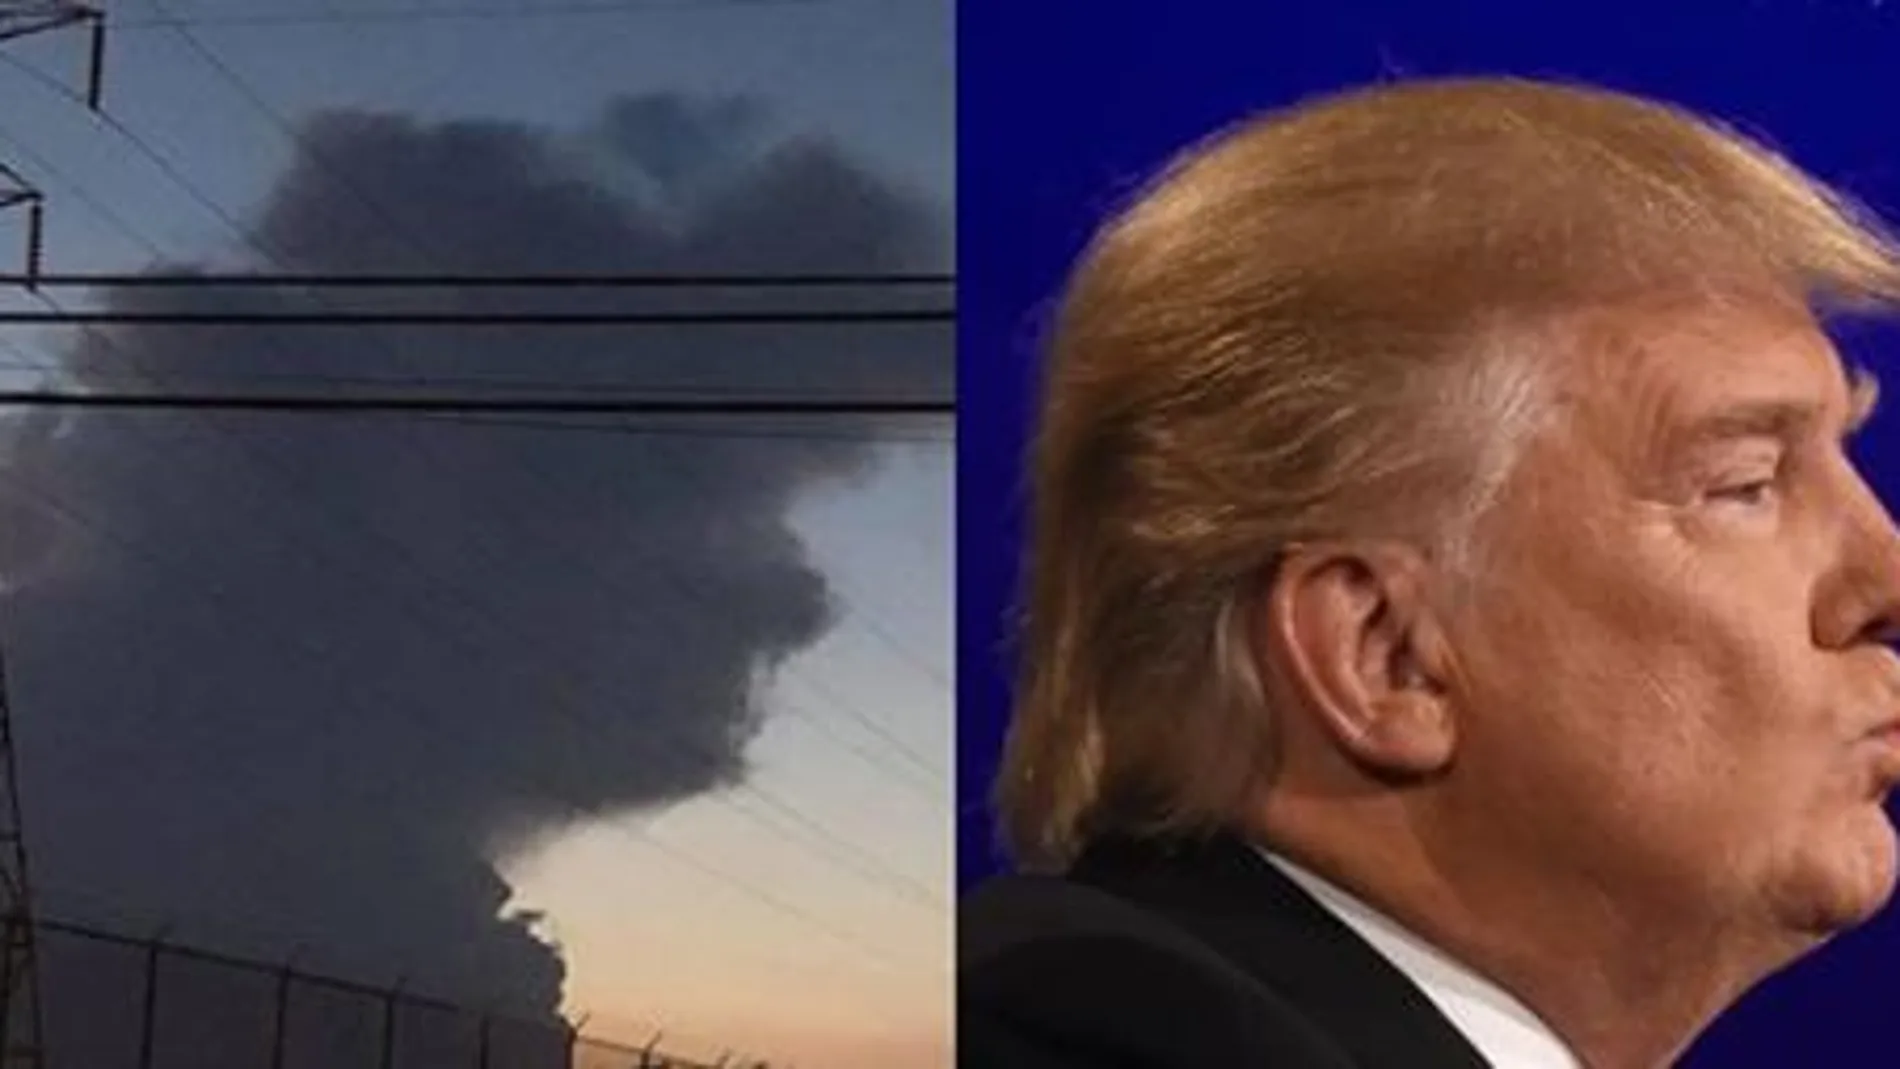 La imagen recuerda la forma del rostro de Trump, si se las mira de izquierda hacia la derecha, partiendo de la torre de alta tensión.